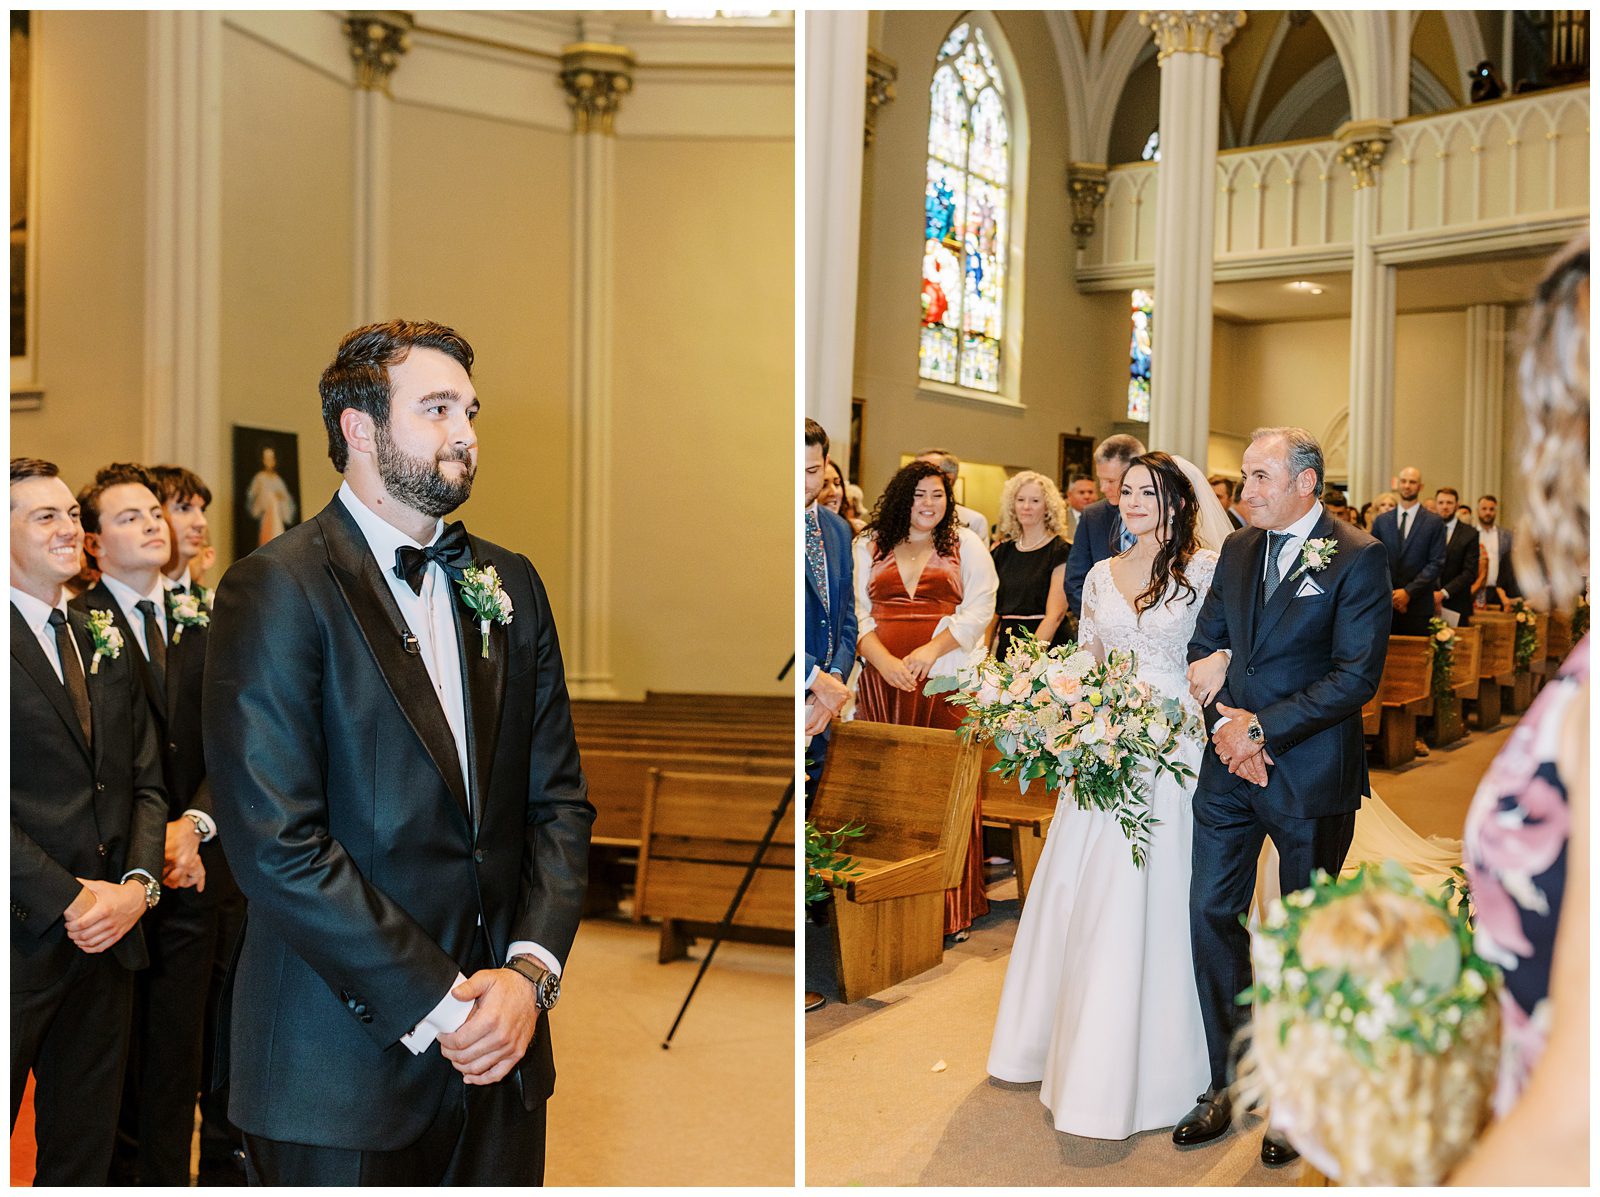 Wedding ceremony at St Alphonsus Parish